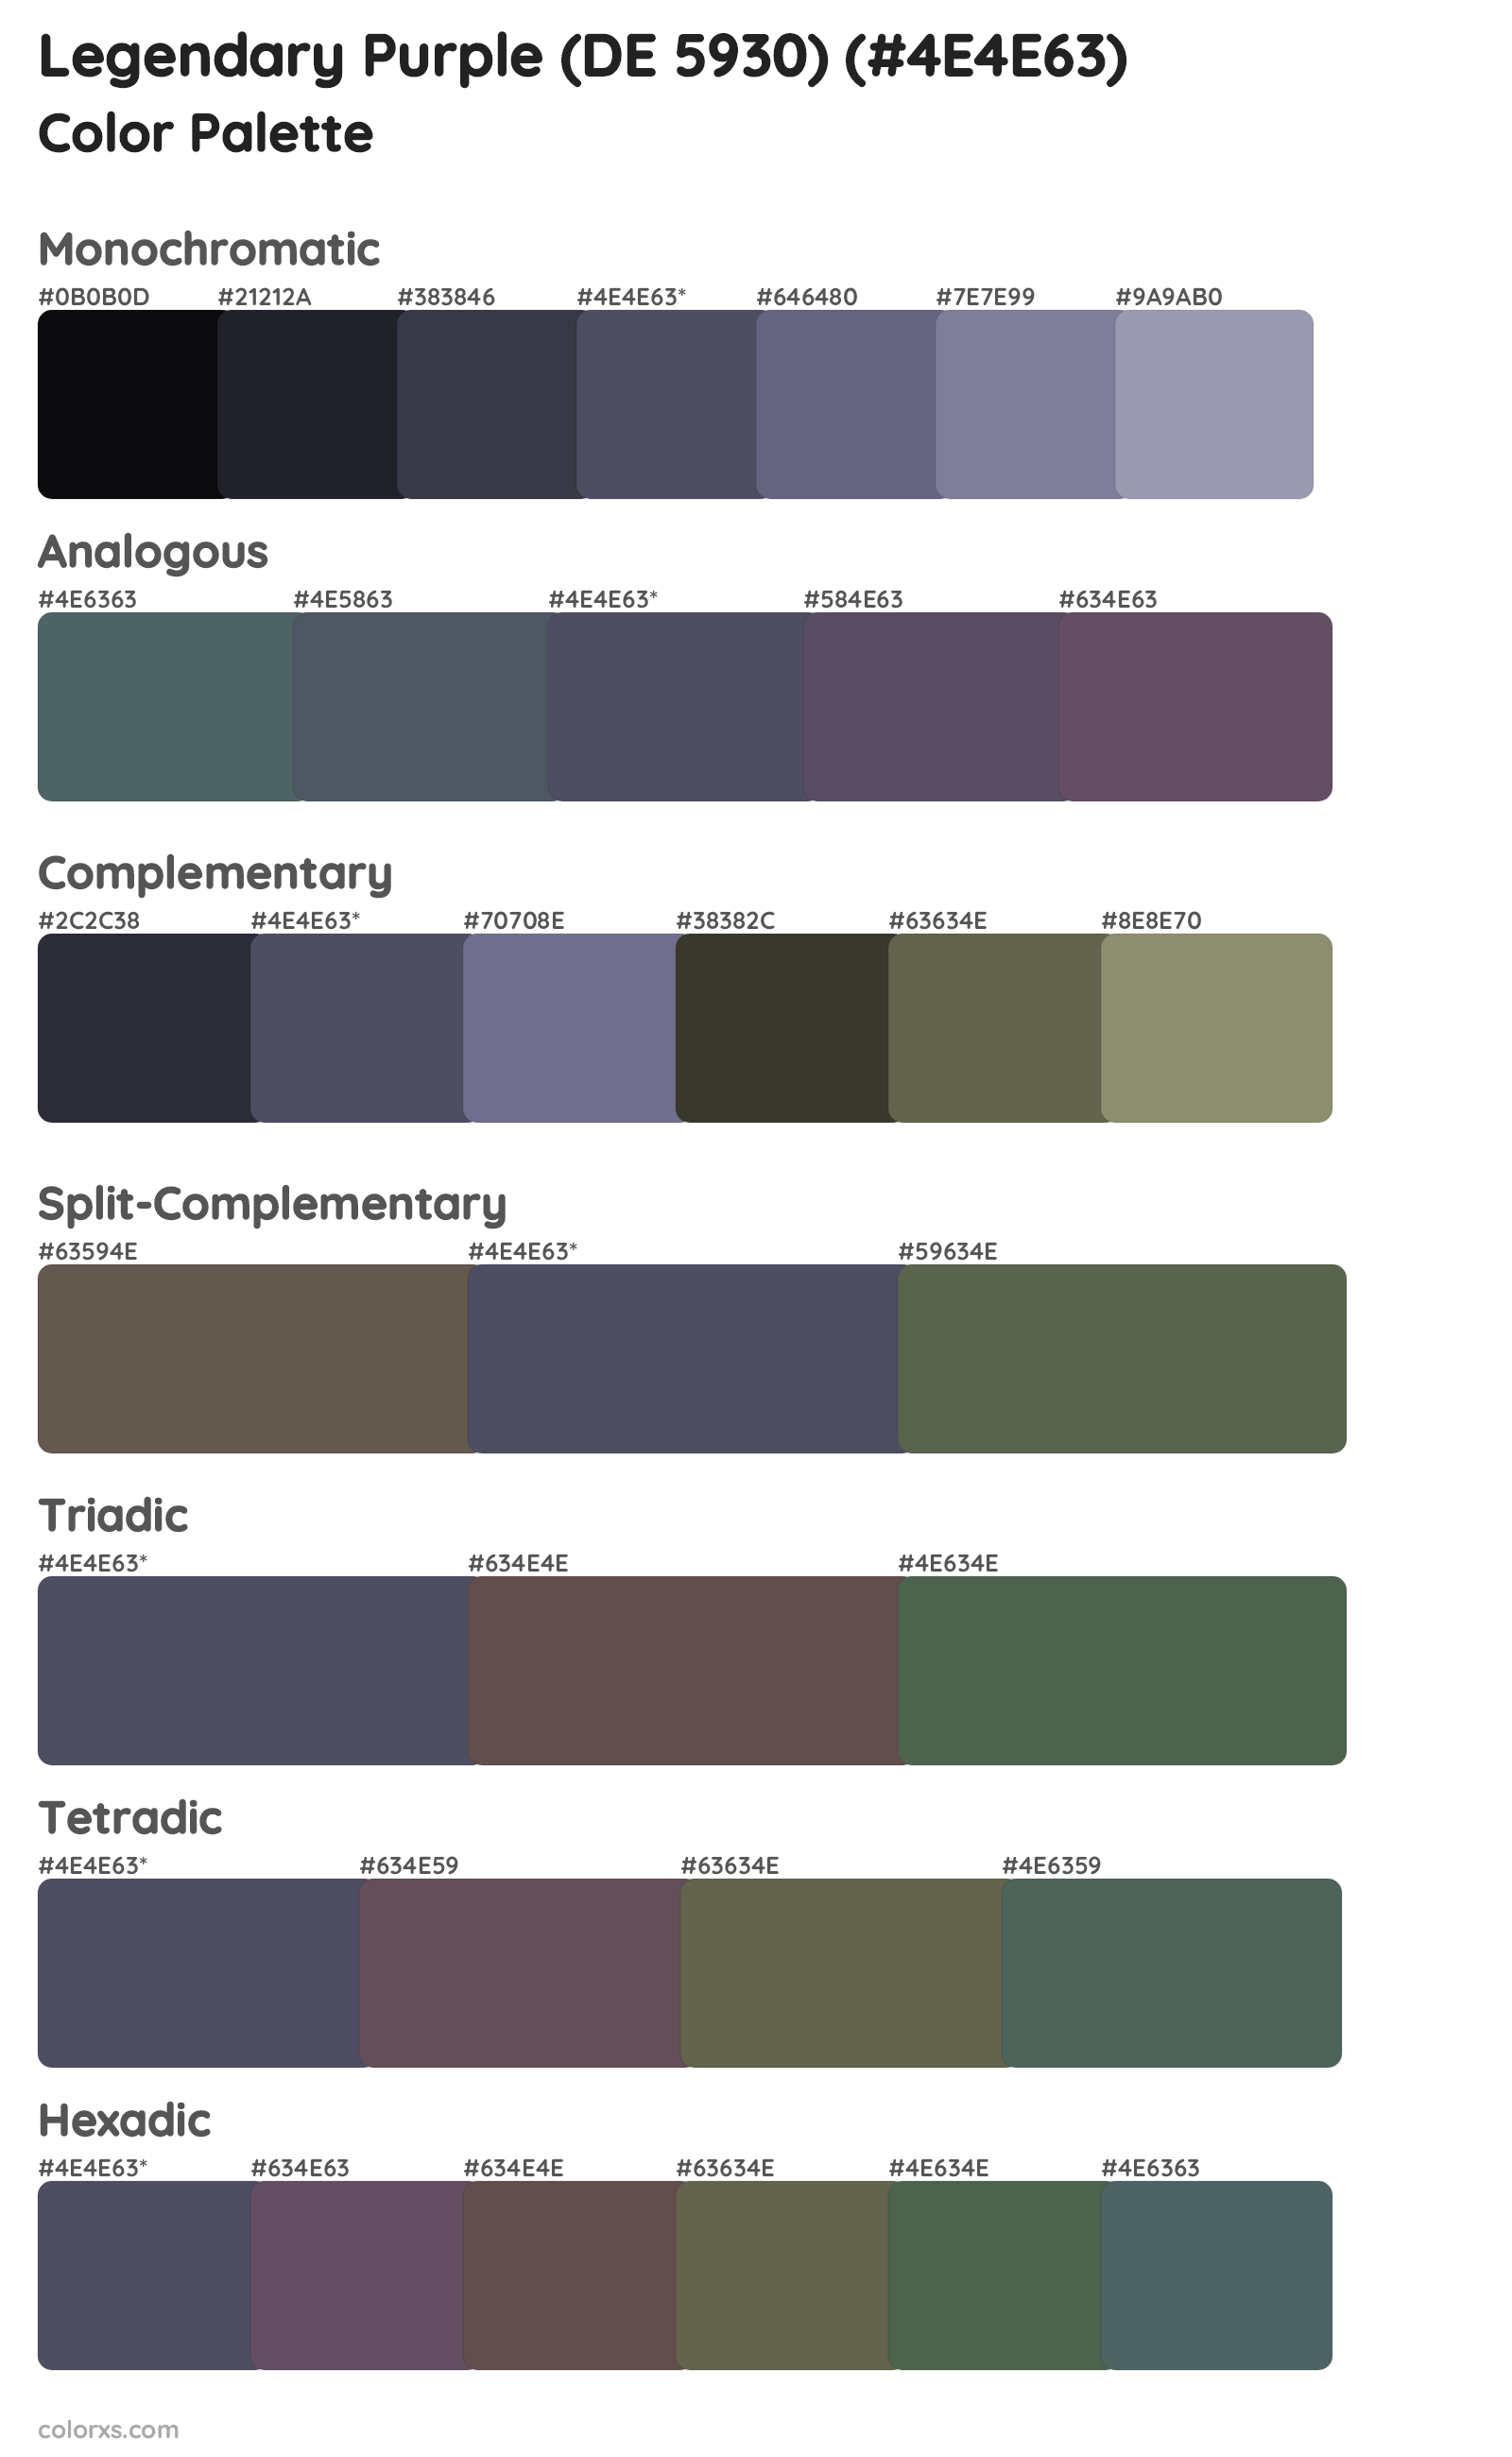 Legendary Purple (DE 5930) Color Scheme Palettes